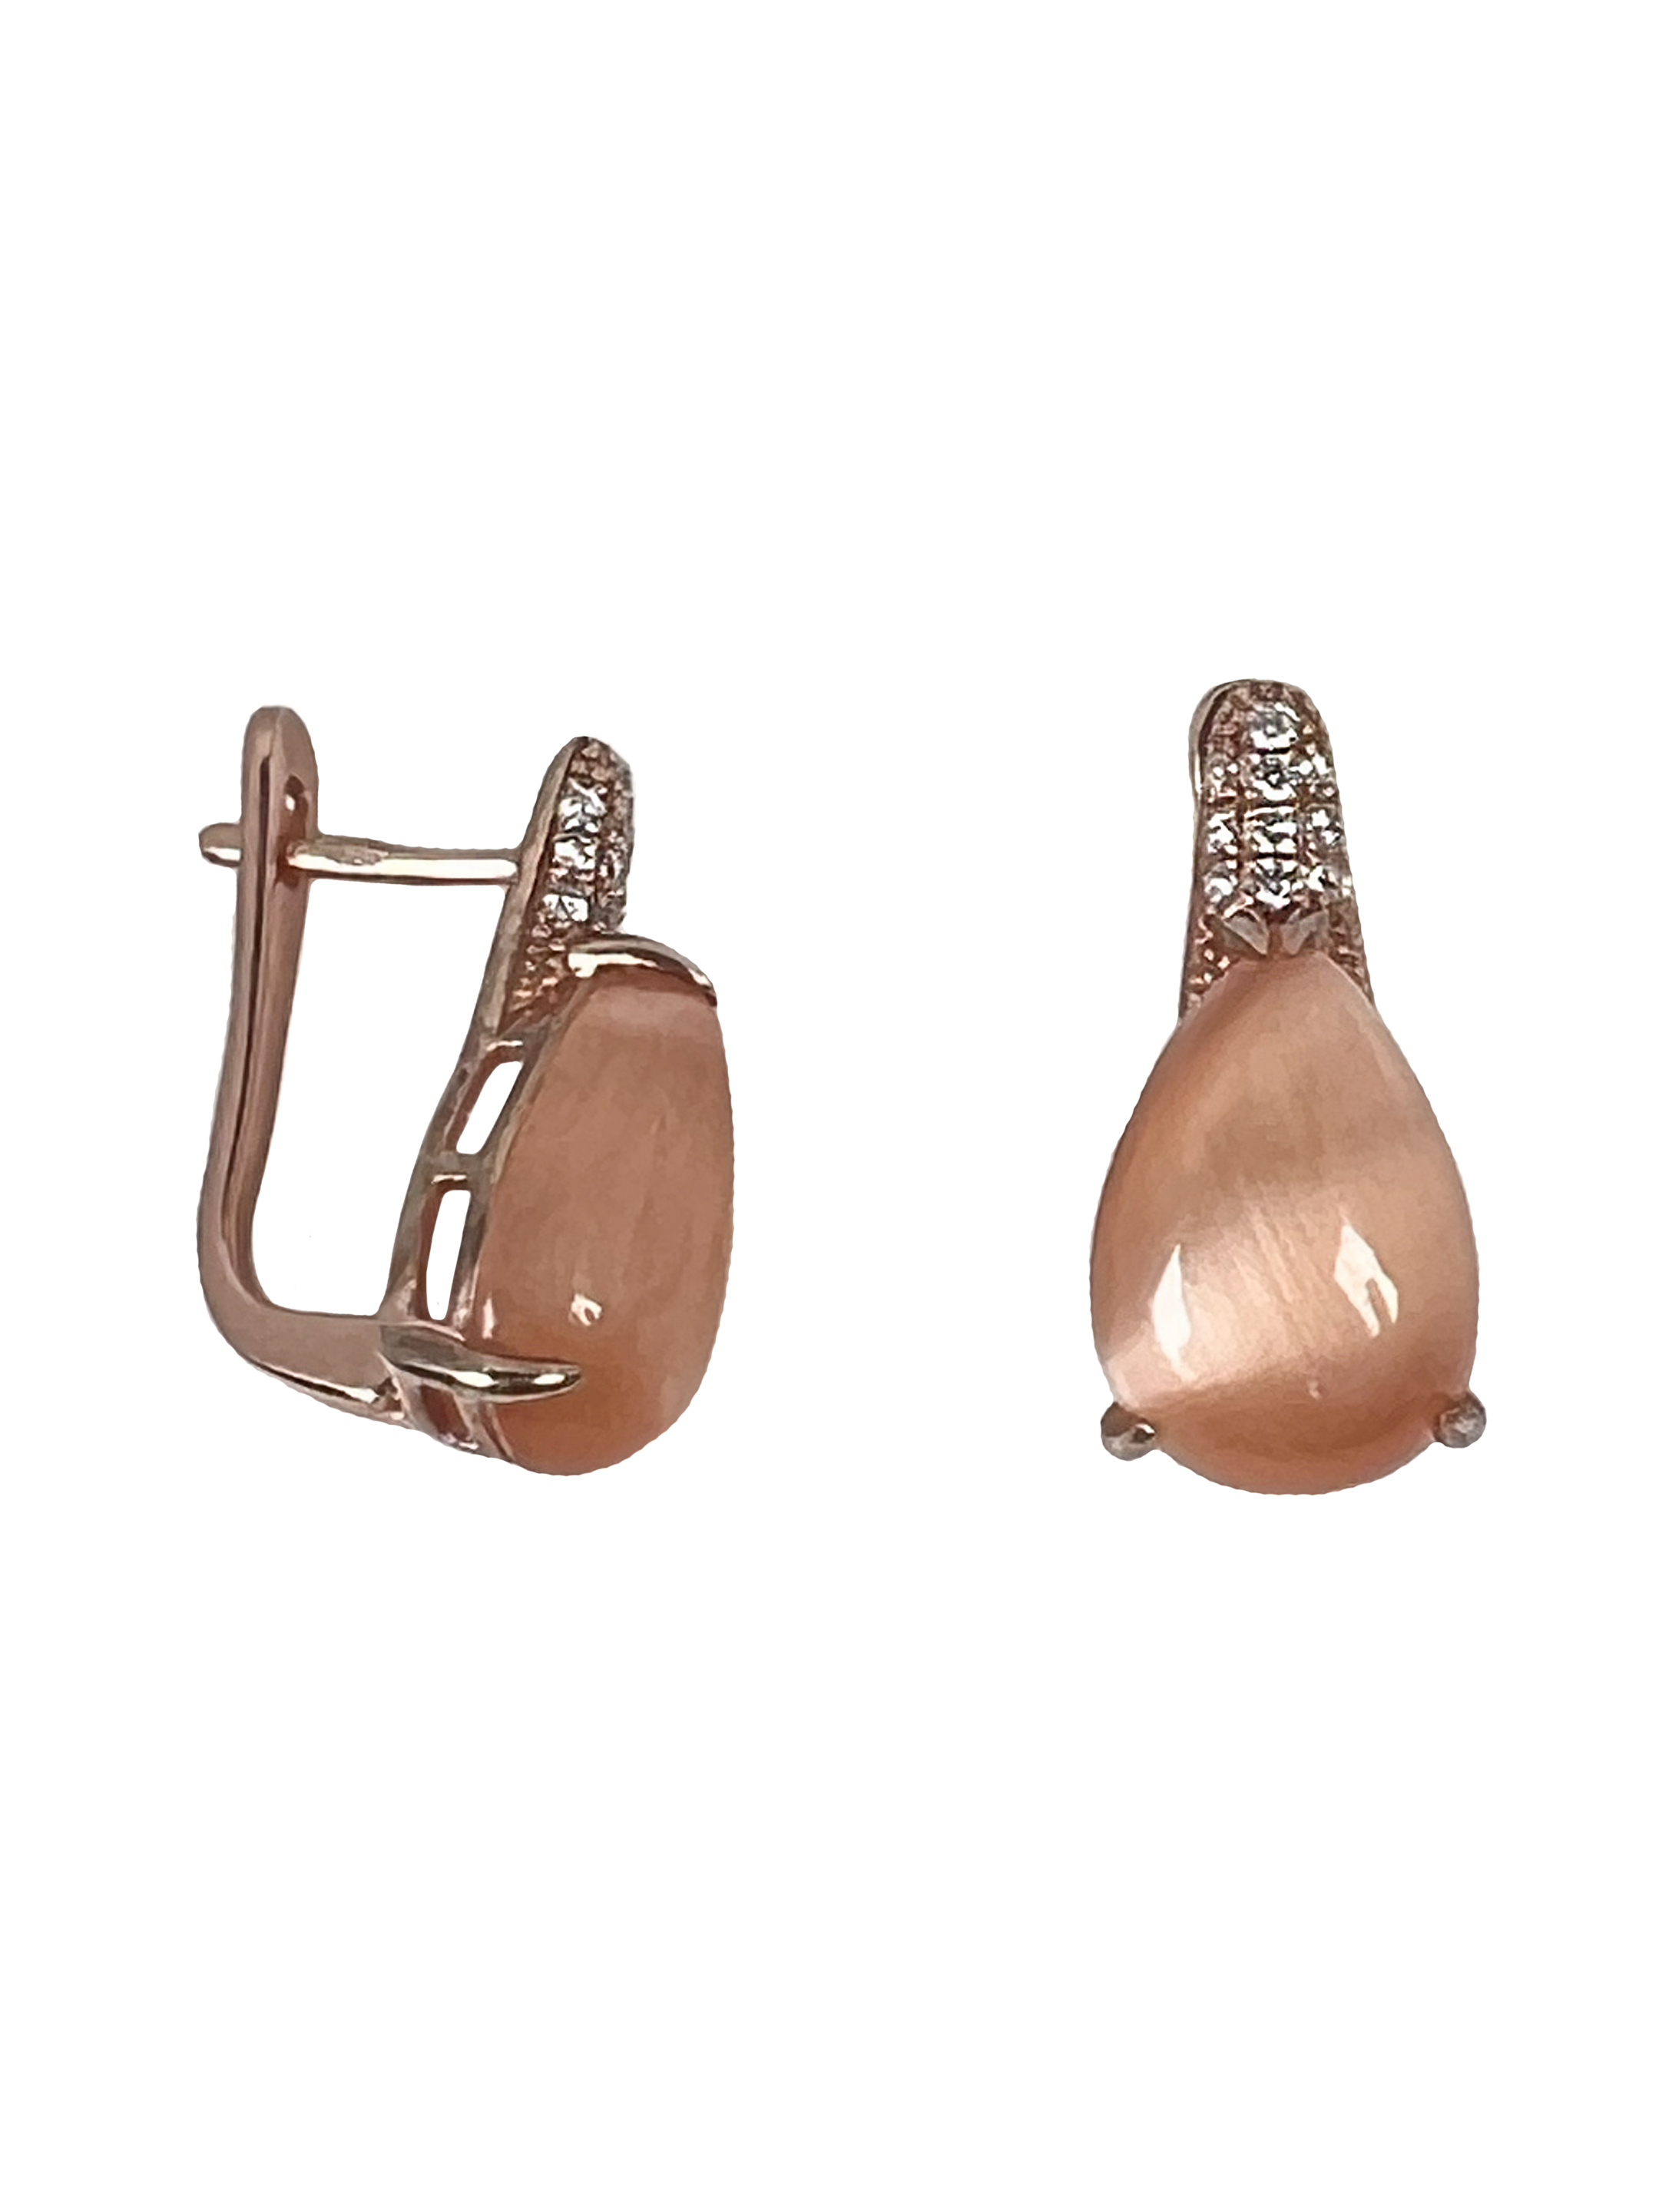 Boucles d'oreilles en argent avec traitement de surface et pierres roses